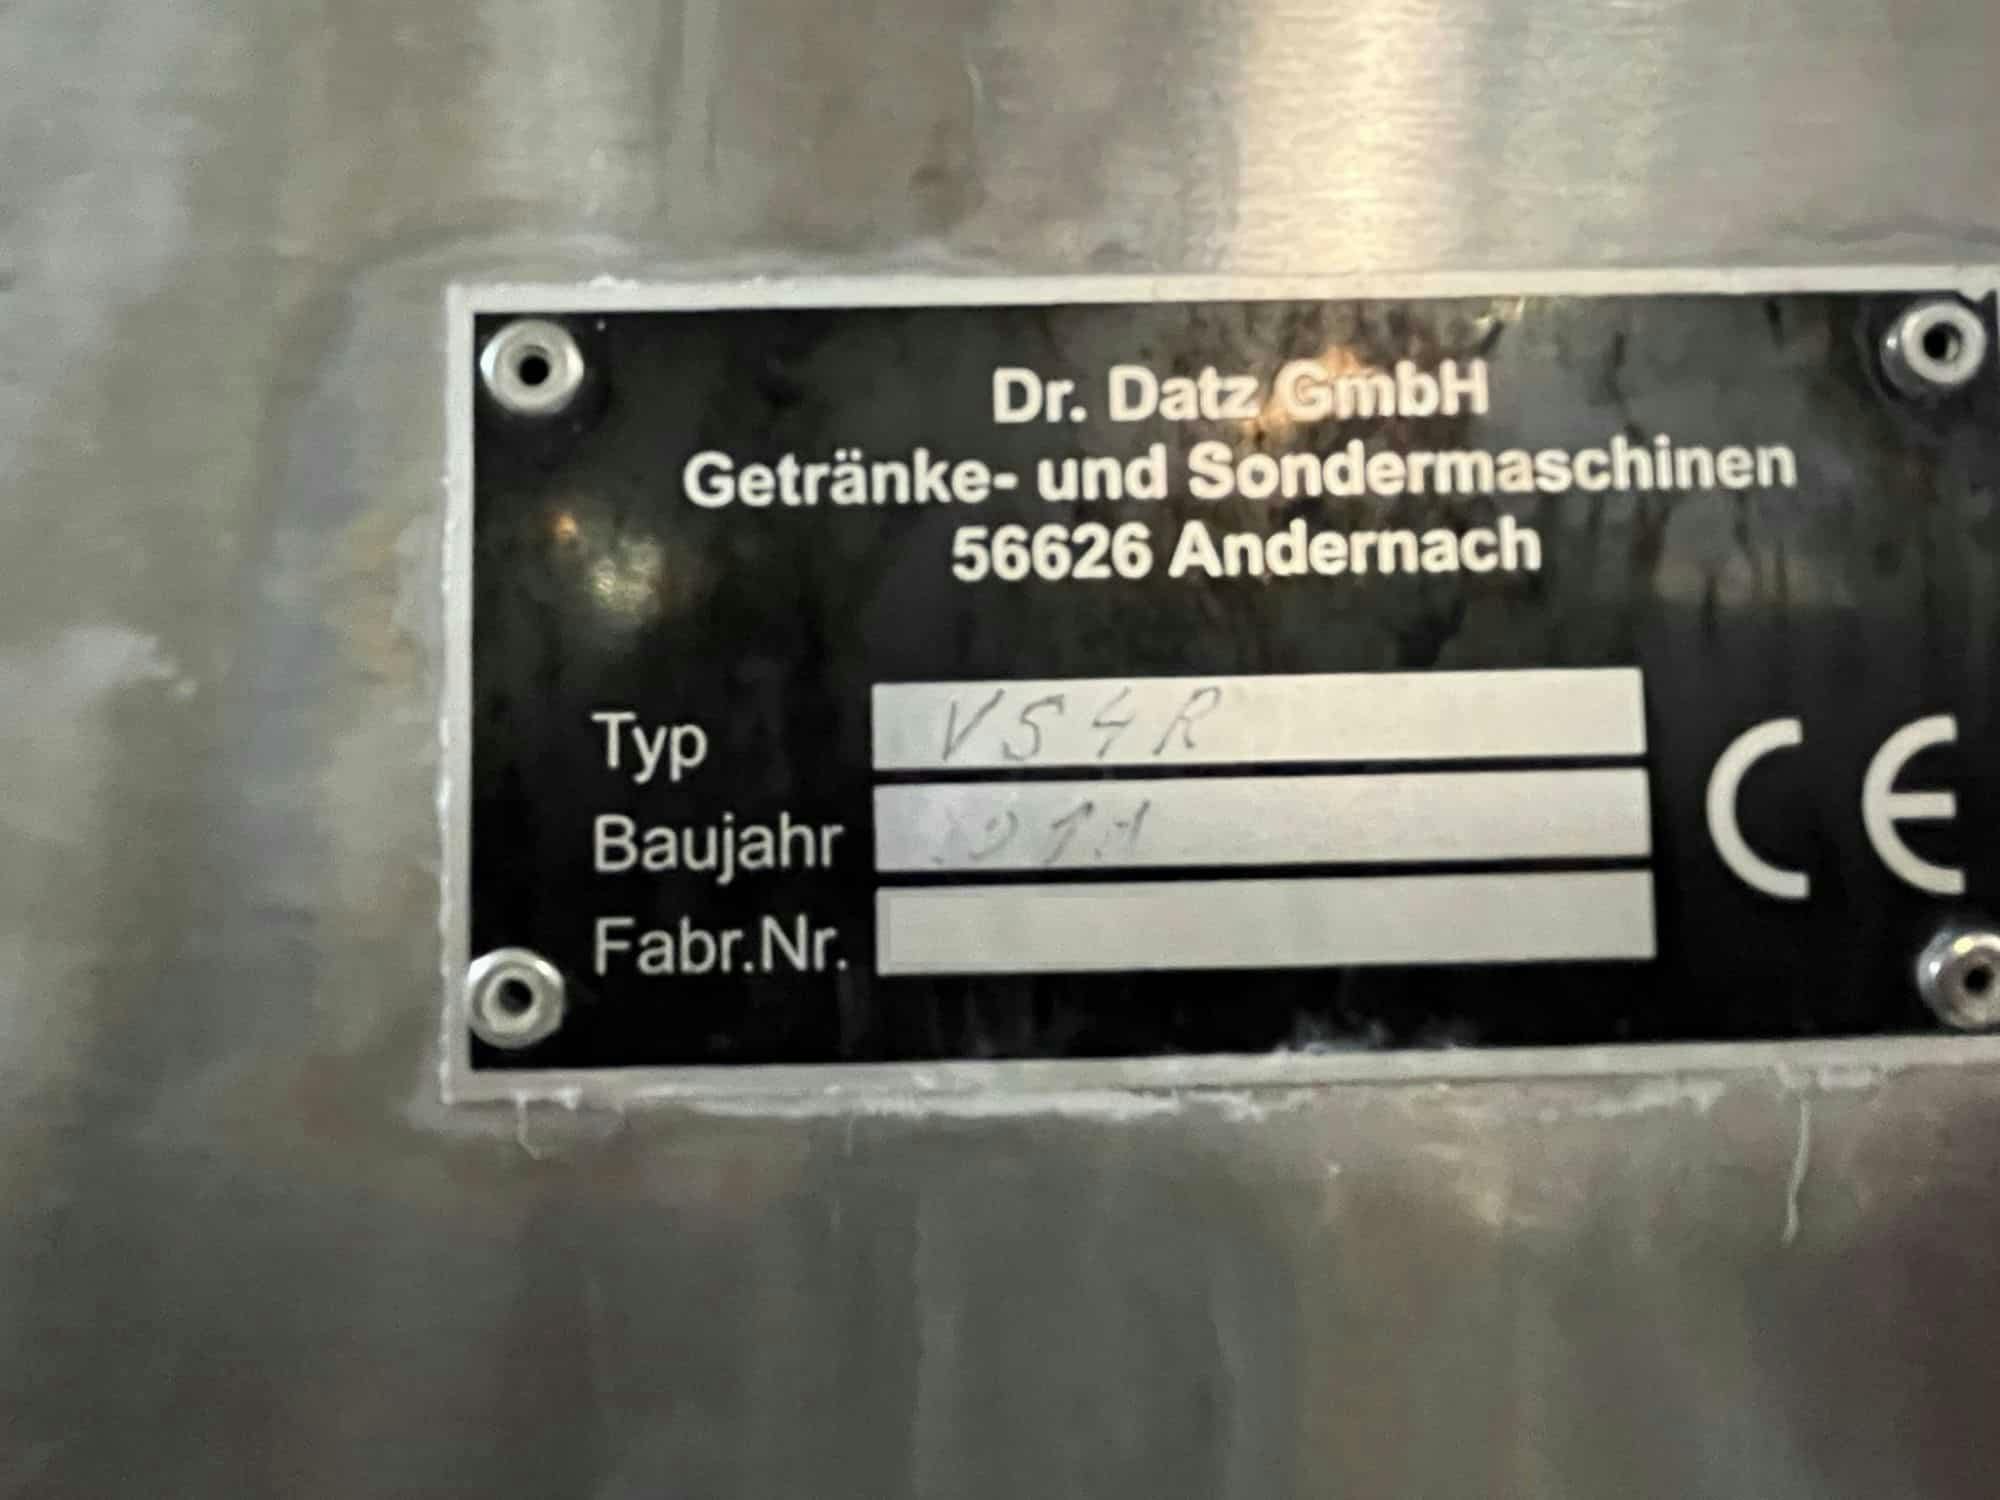 Typenschild of Dr. Datz GmbH Getränke- und Sondermaschinenbau VS4R